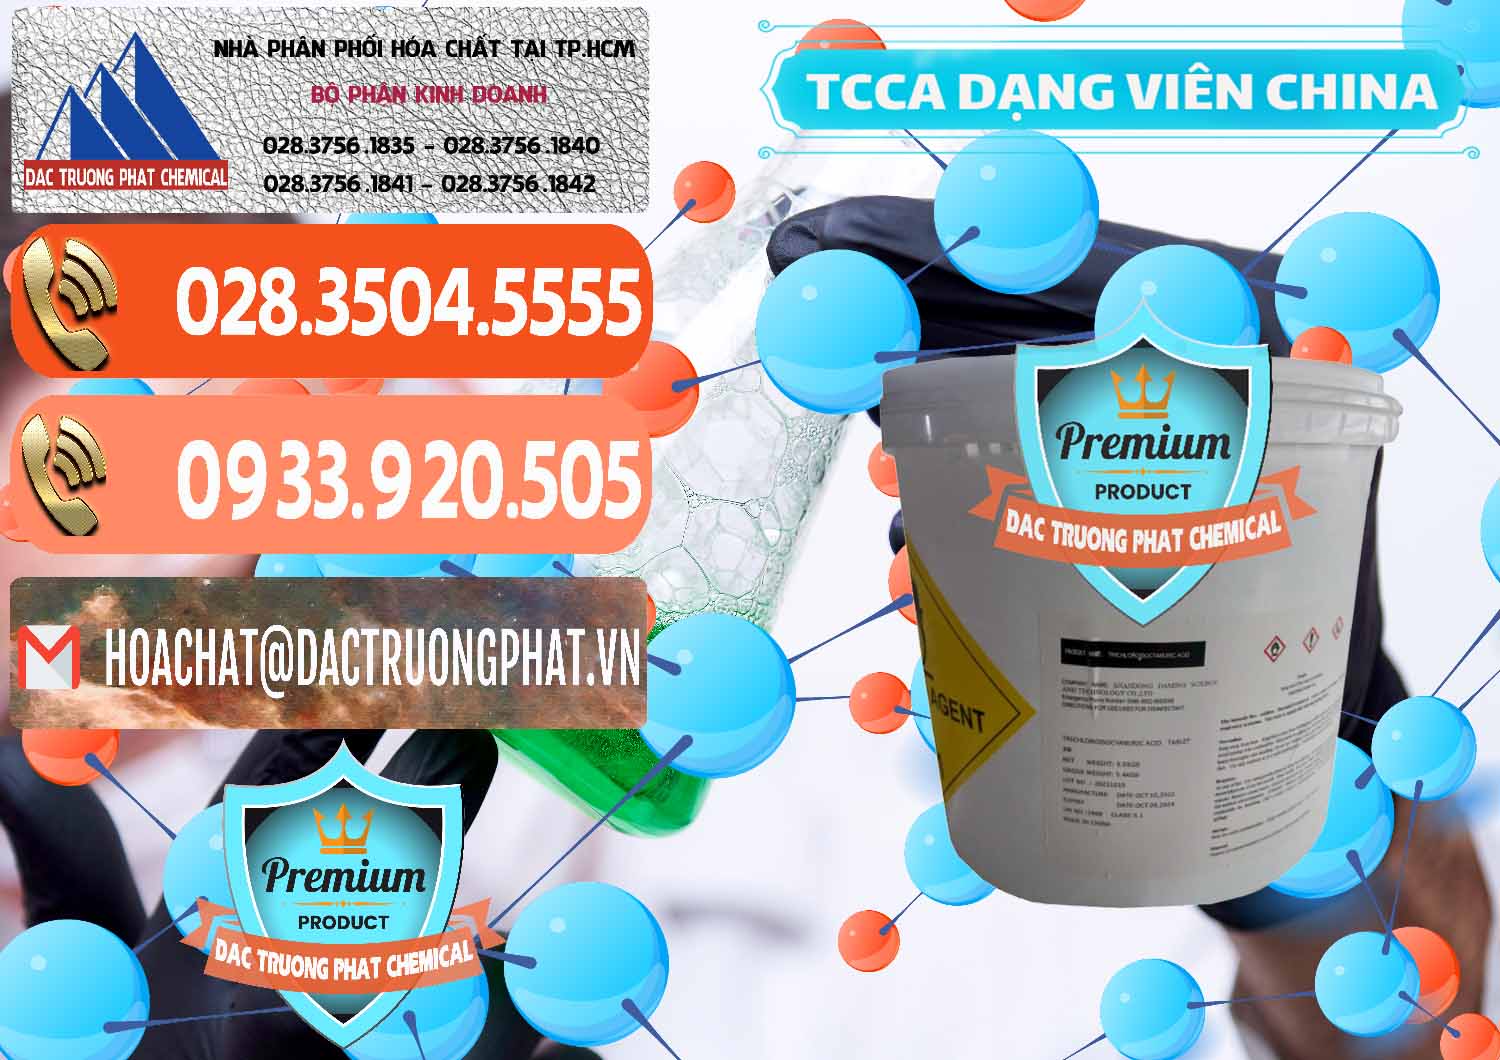 Đơn vị cung cấp - bán TCCA - Acid Trichloroisocyanuric Dạng Viên Thùng 5kg Trung Quốc China - 0379 - Nơi chuyên cung cấp _ bán hóa chất tại TP.HCM - hoachatmientay.com